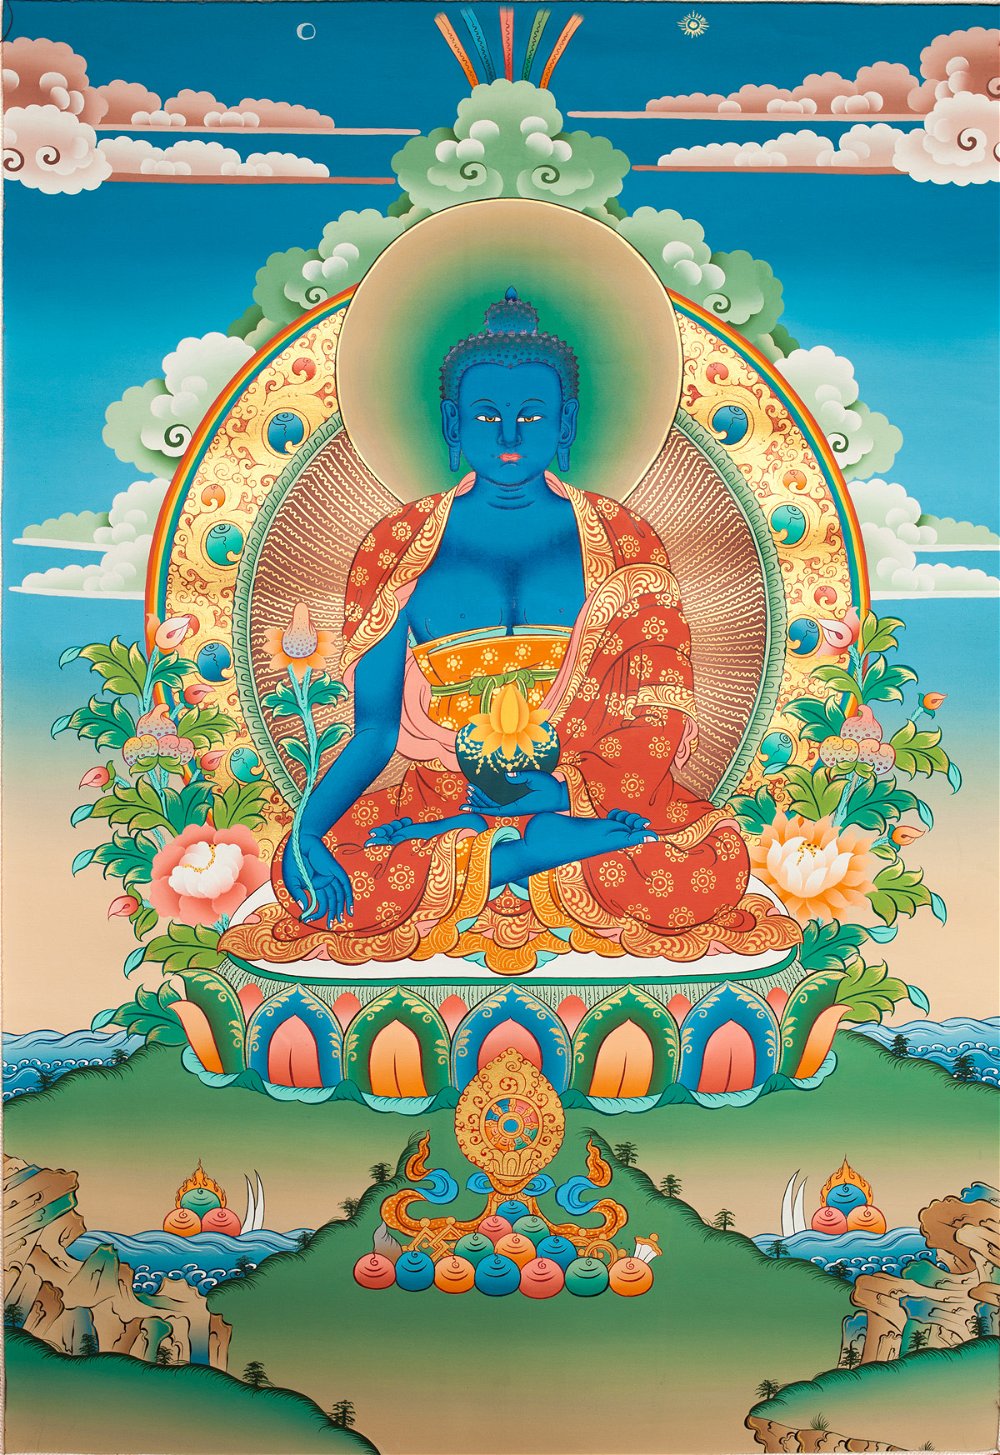 Тханка Будда Медицины (100 x 148 см), 100 x 148 см, изображение: 47 х 69 см